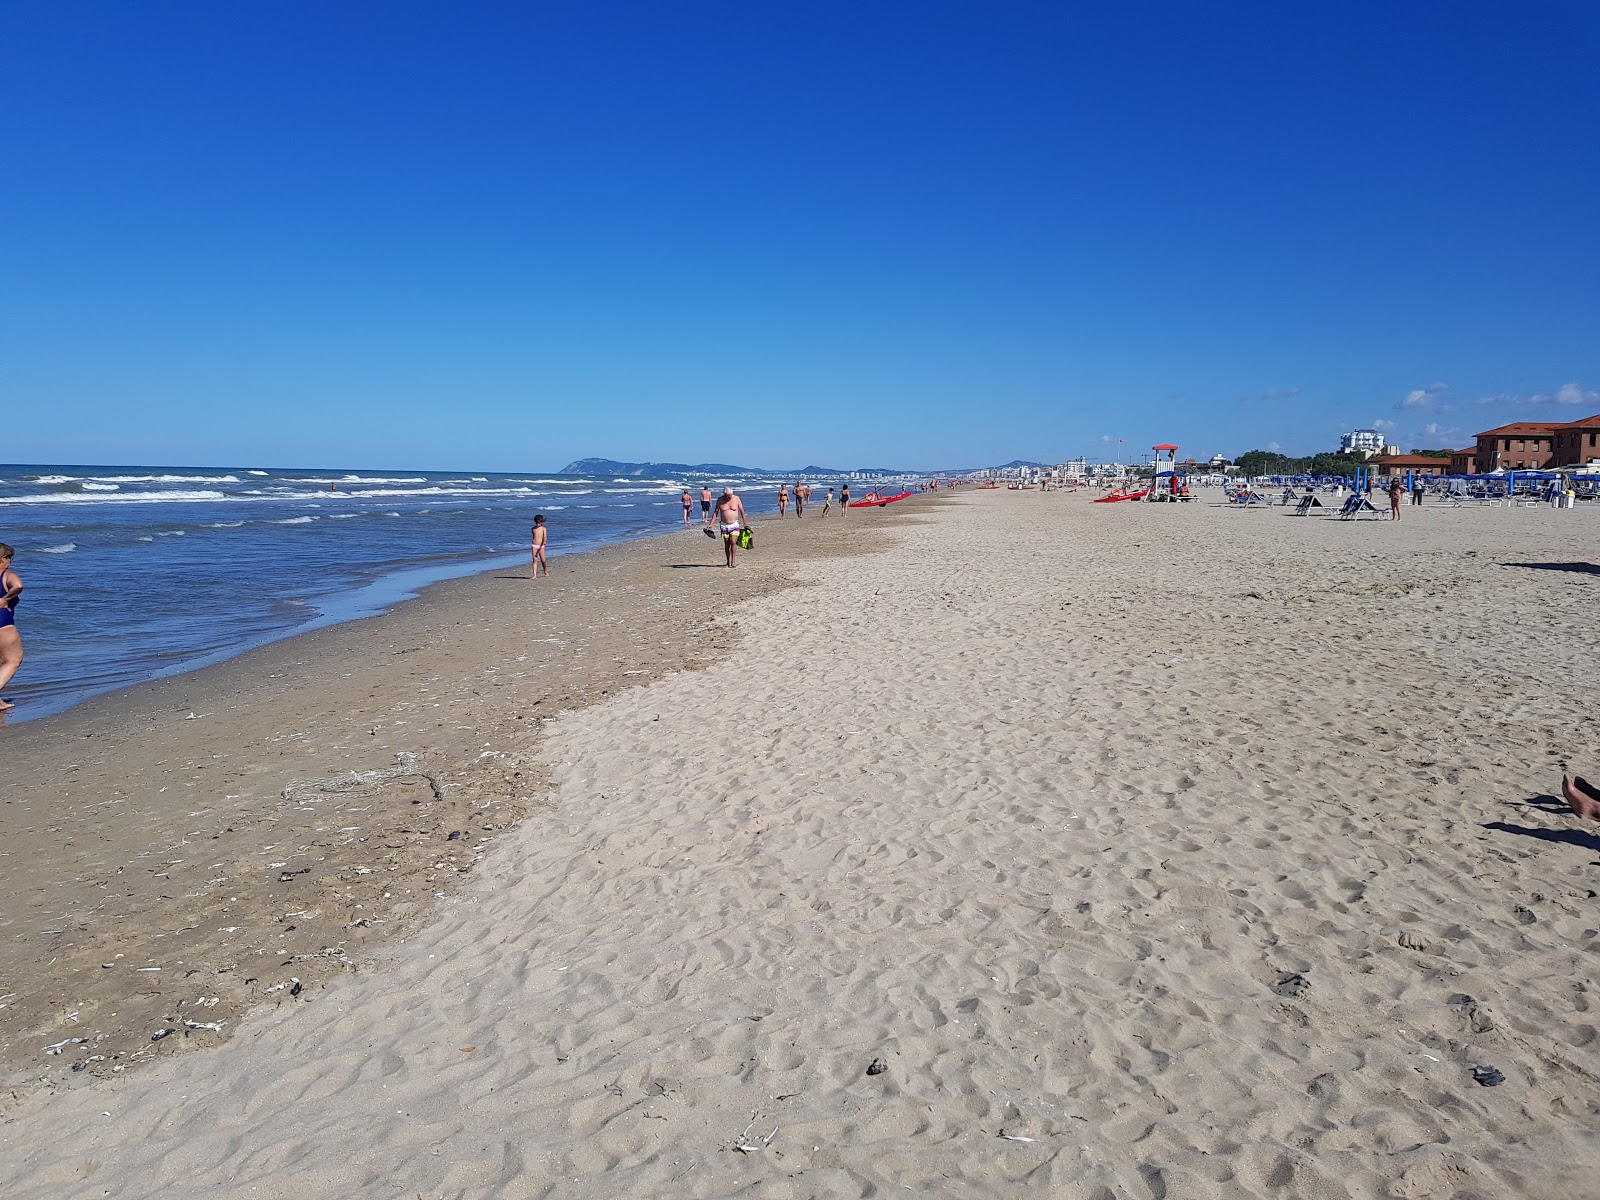 Fotografie cu Rimini Miramare cu o suprafață de nisip strălucitor